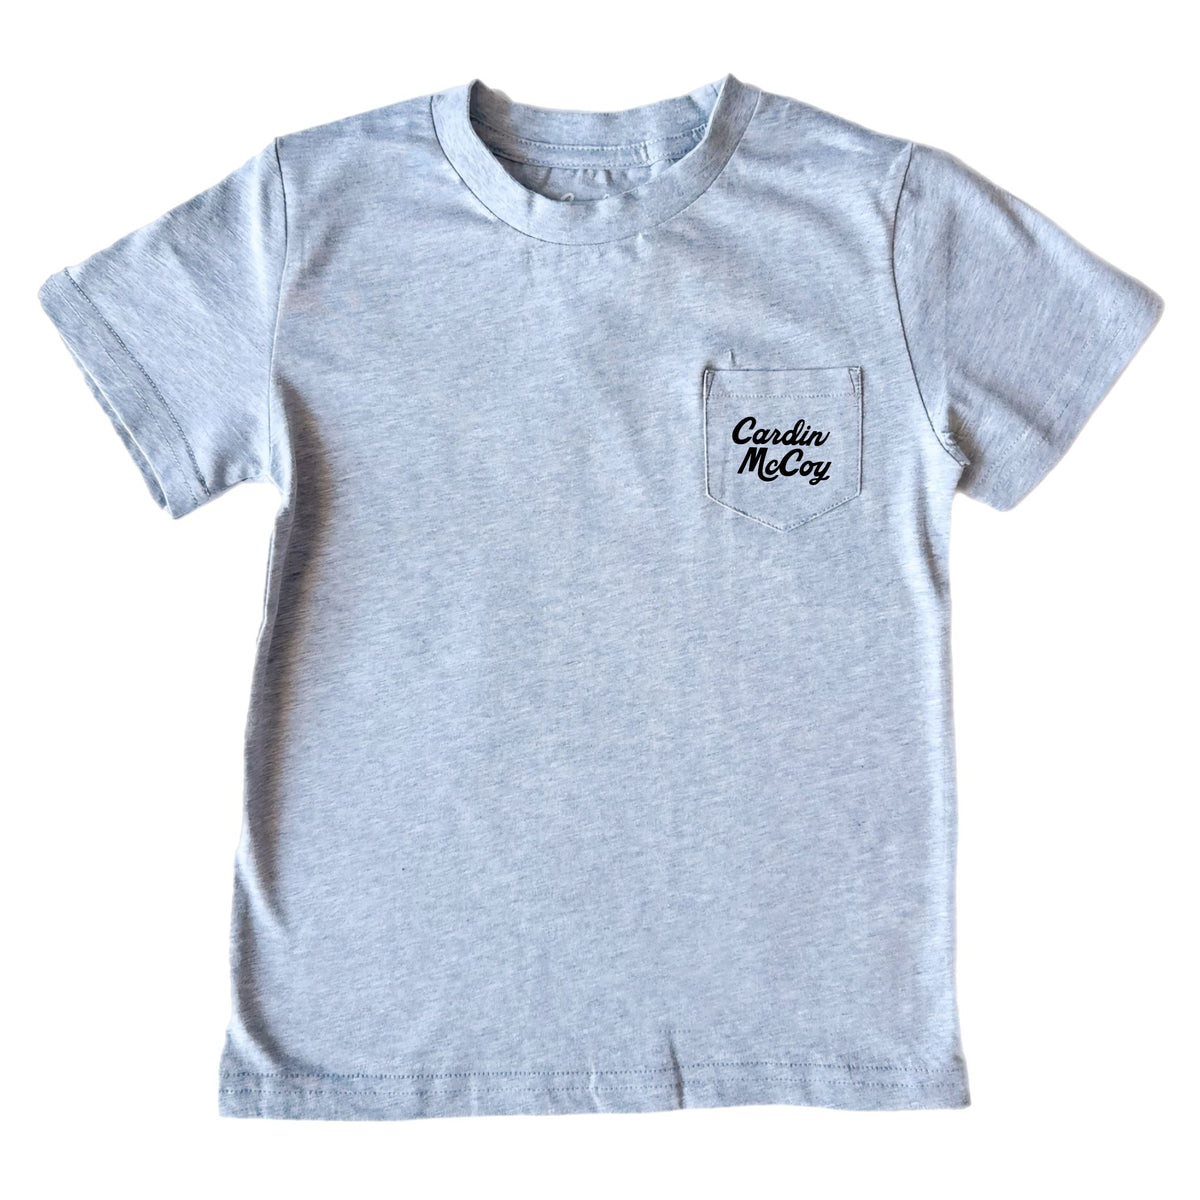 Boys' Pool Days Short-Sleeve Tee Short Sleeve T-Shirt Cardin McCoy 